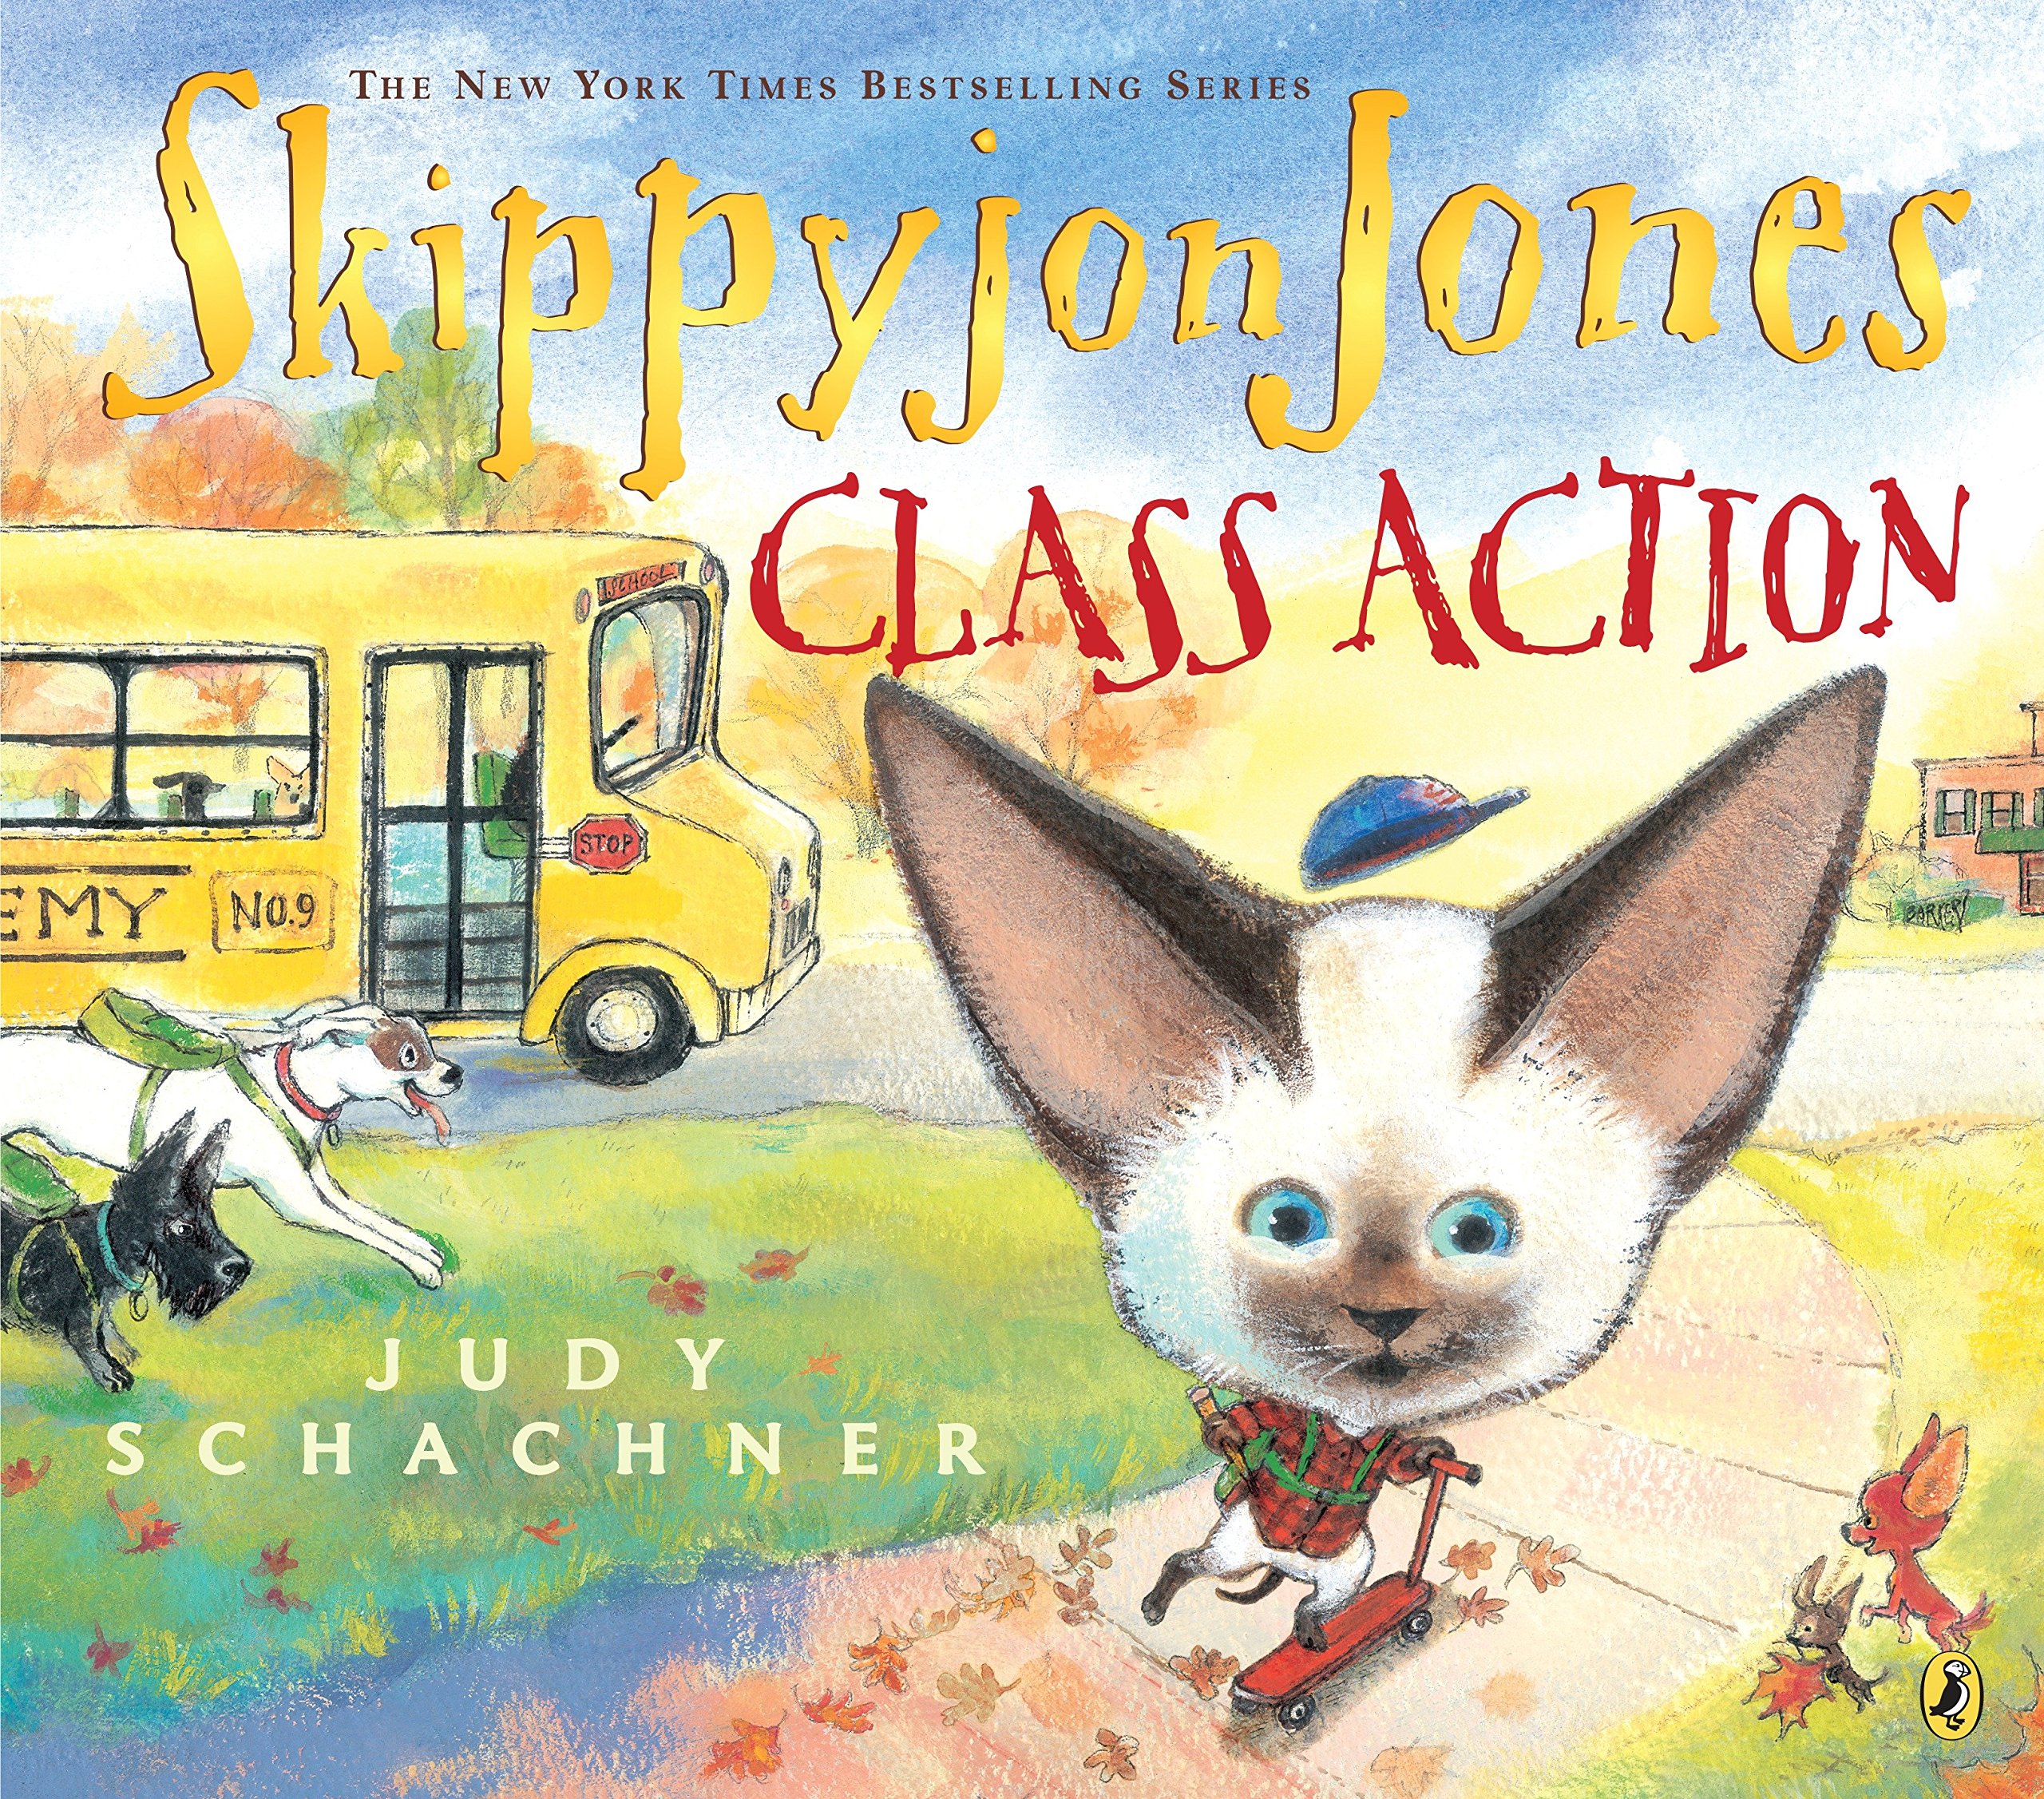 Skippyjon Jones: Class Action